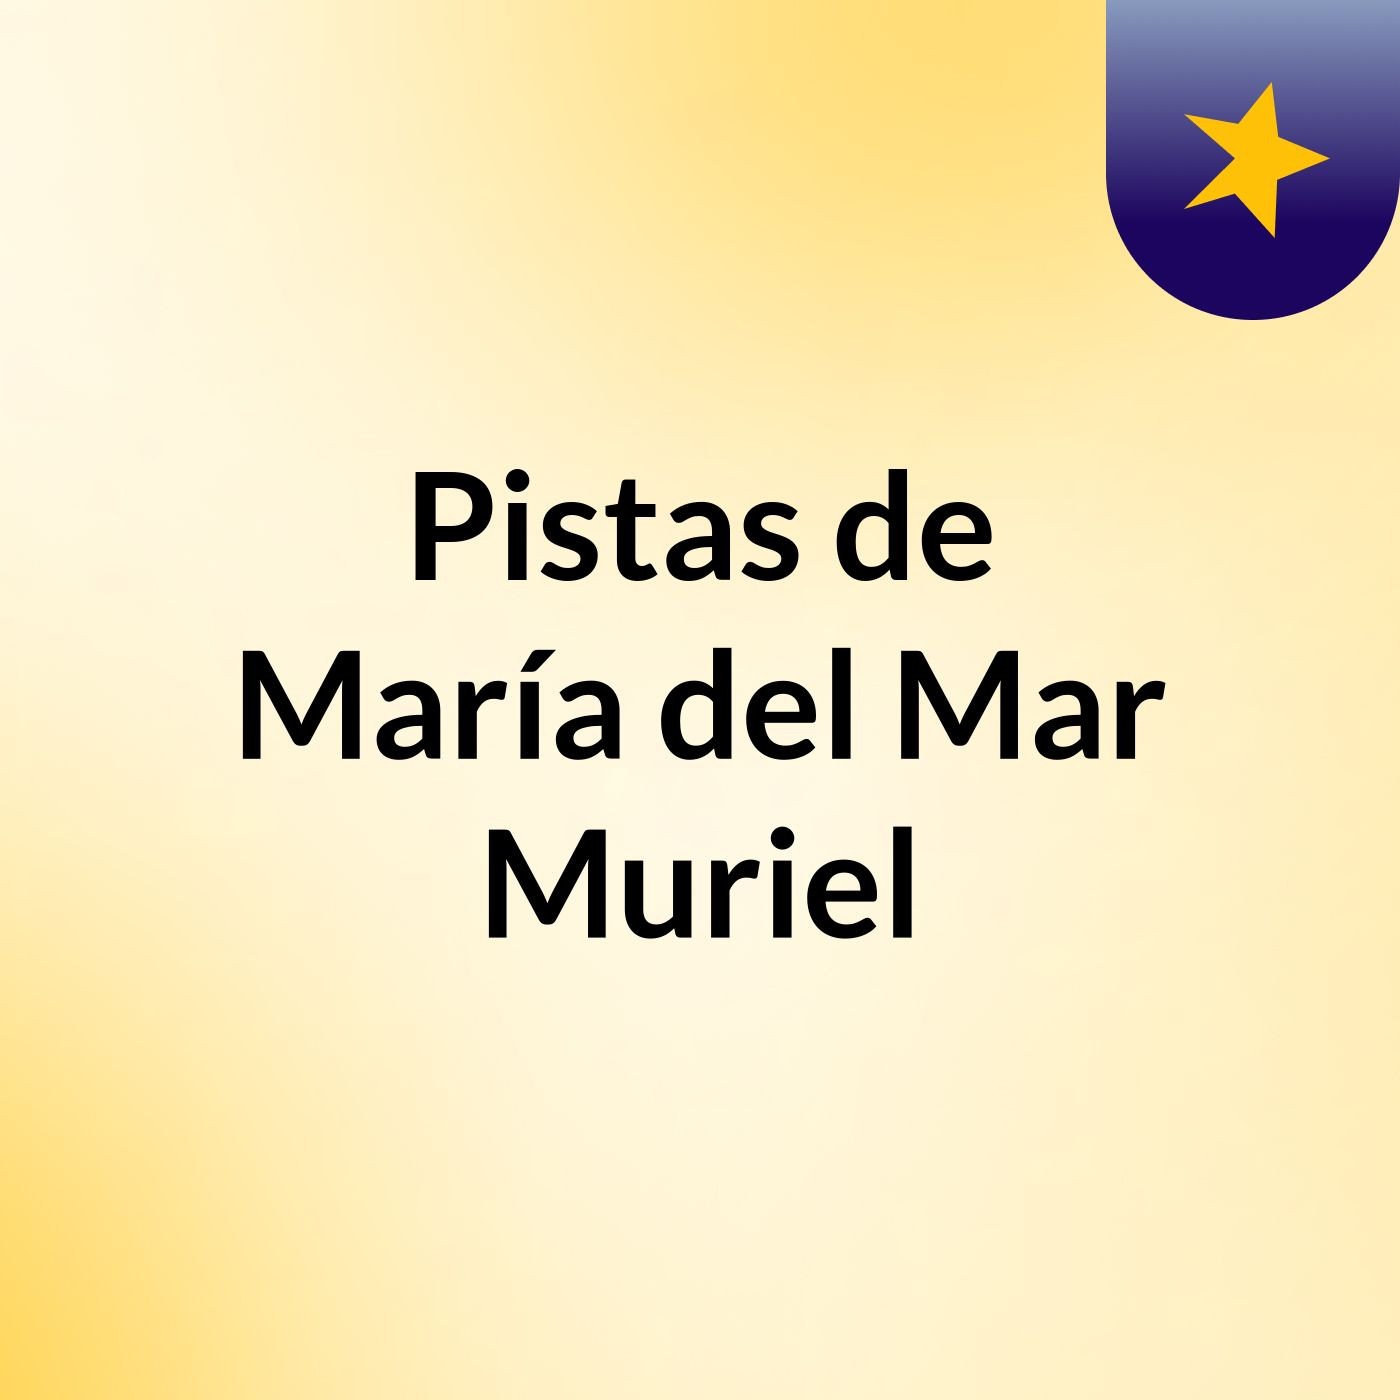 Pistas de María del Mar Muriel